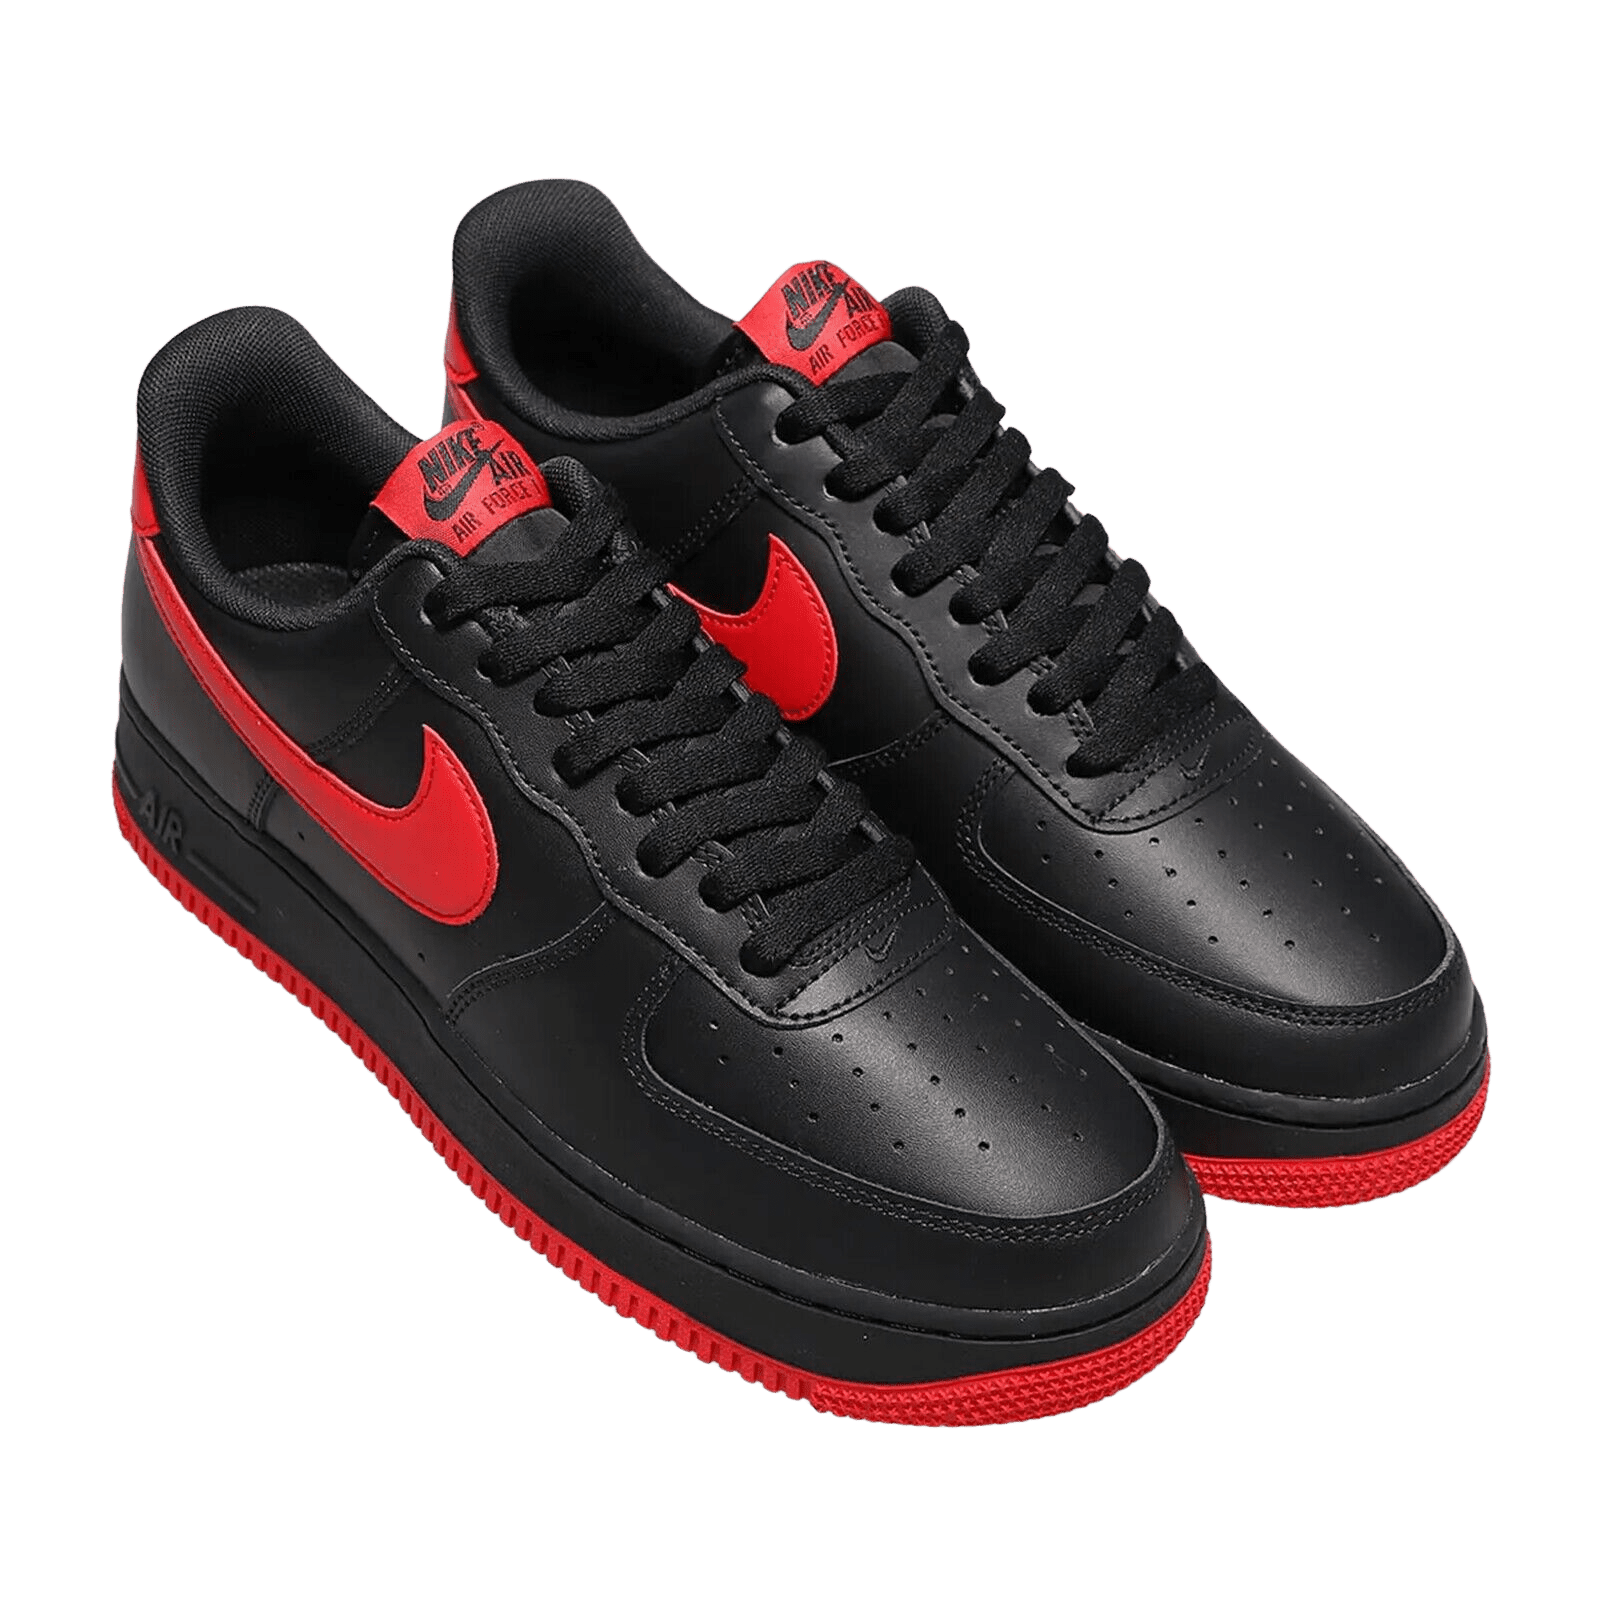 harmonisk Skærpe Bi The Black and Red Air Force 1 Sneakers | eBay